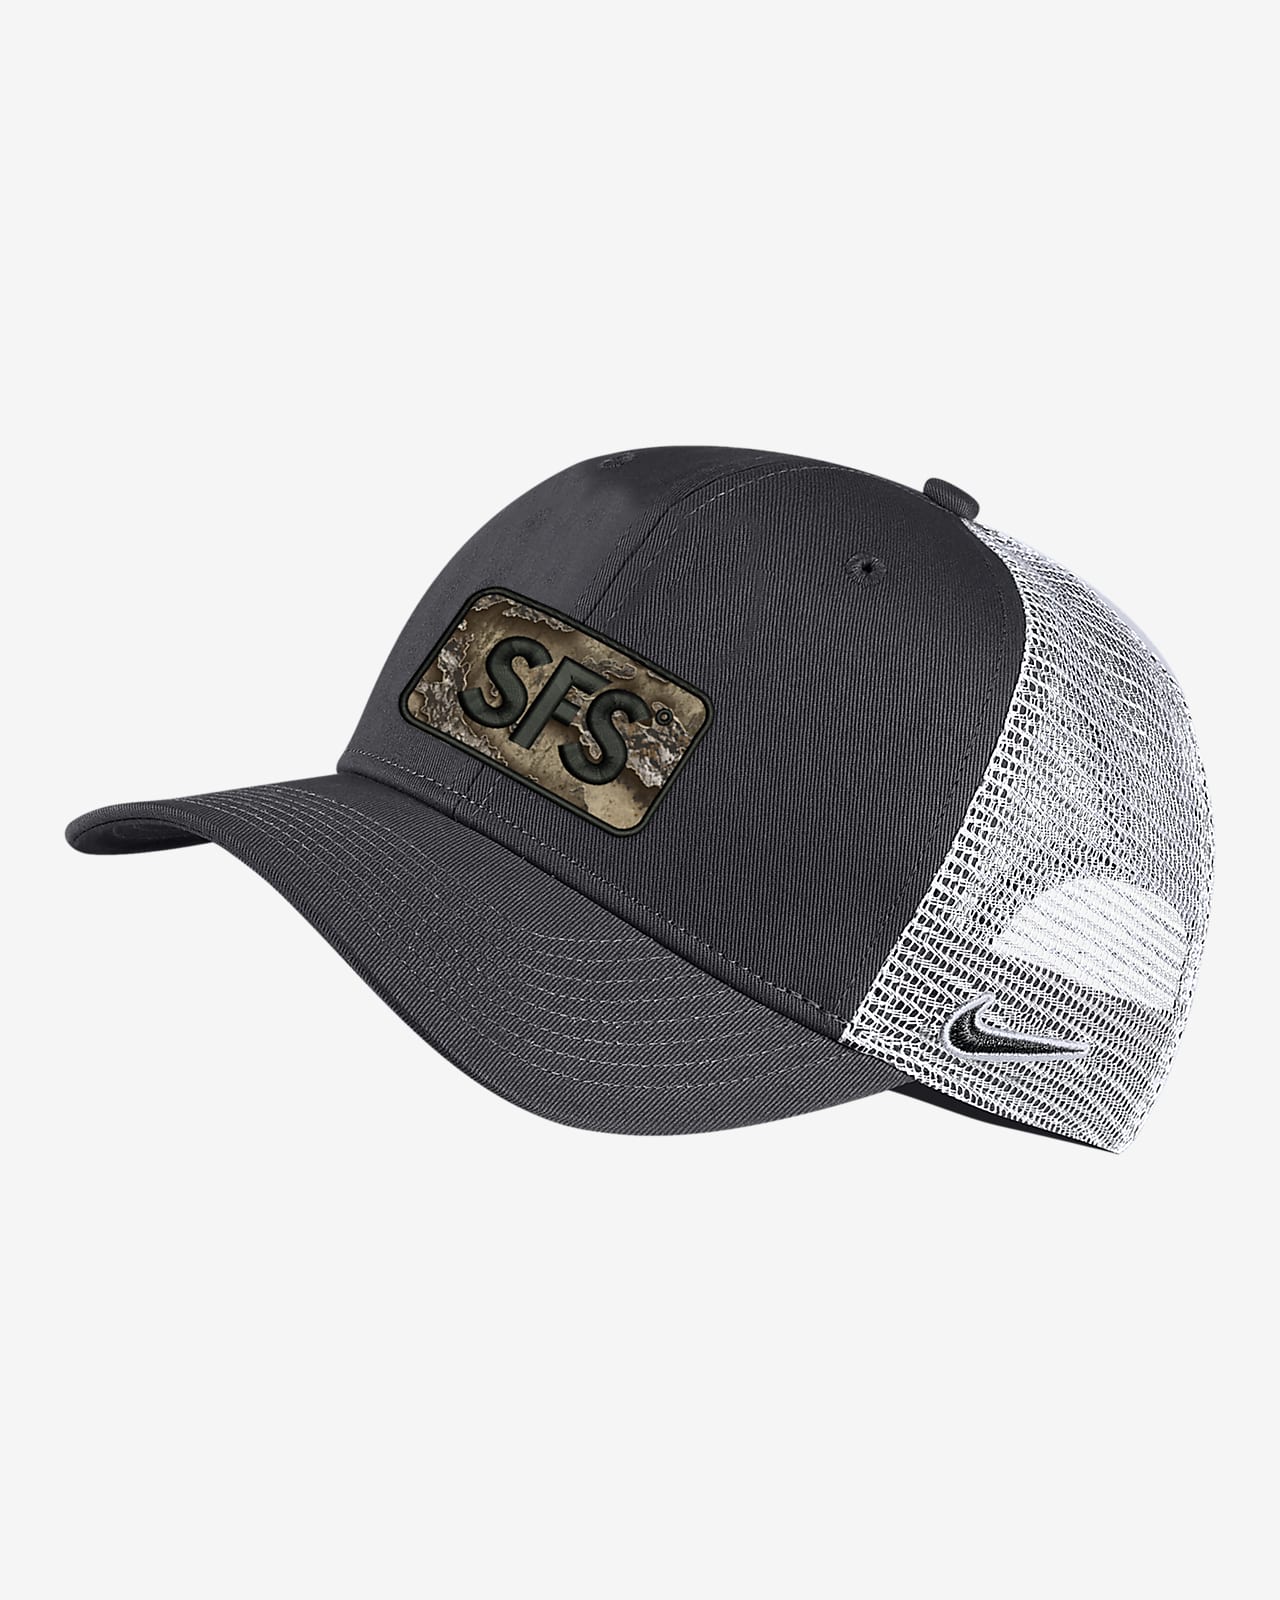 Nike Classic99 SFS Trucker Hat.